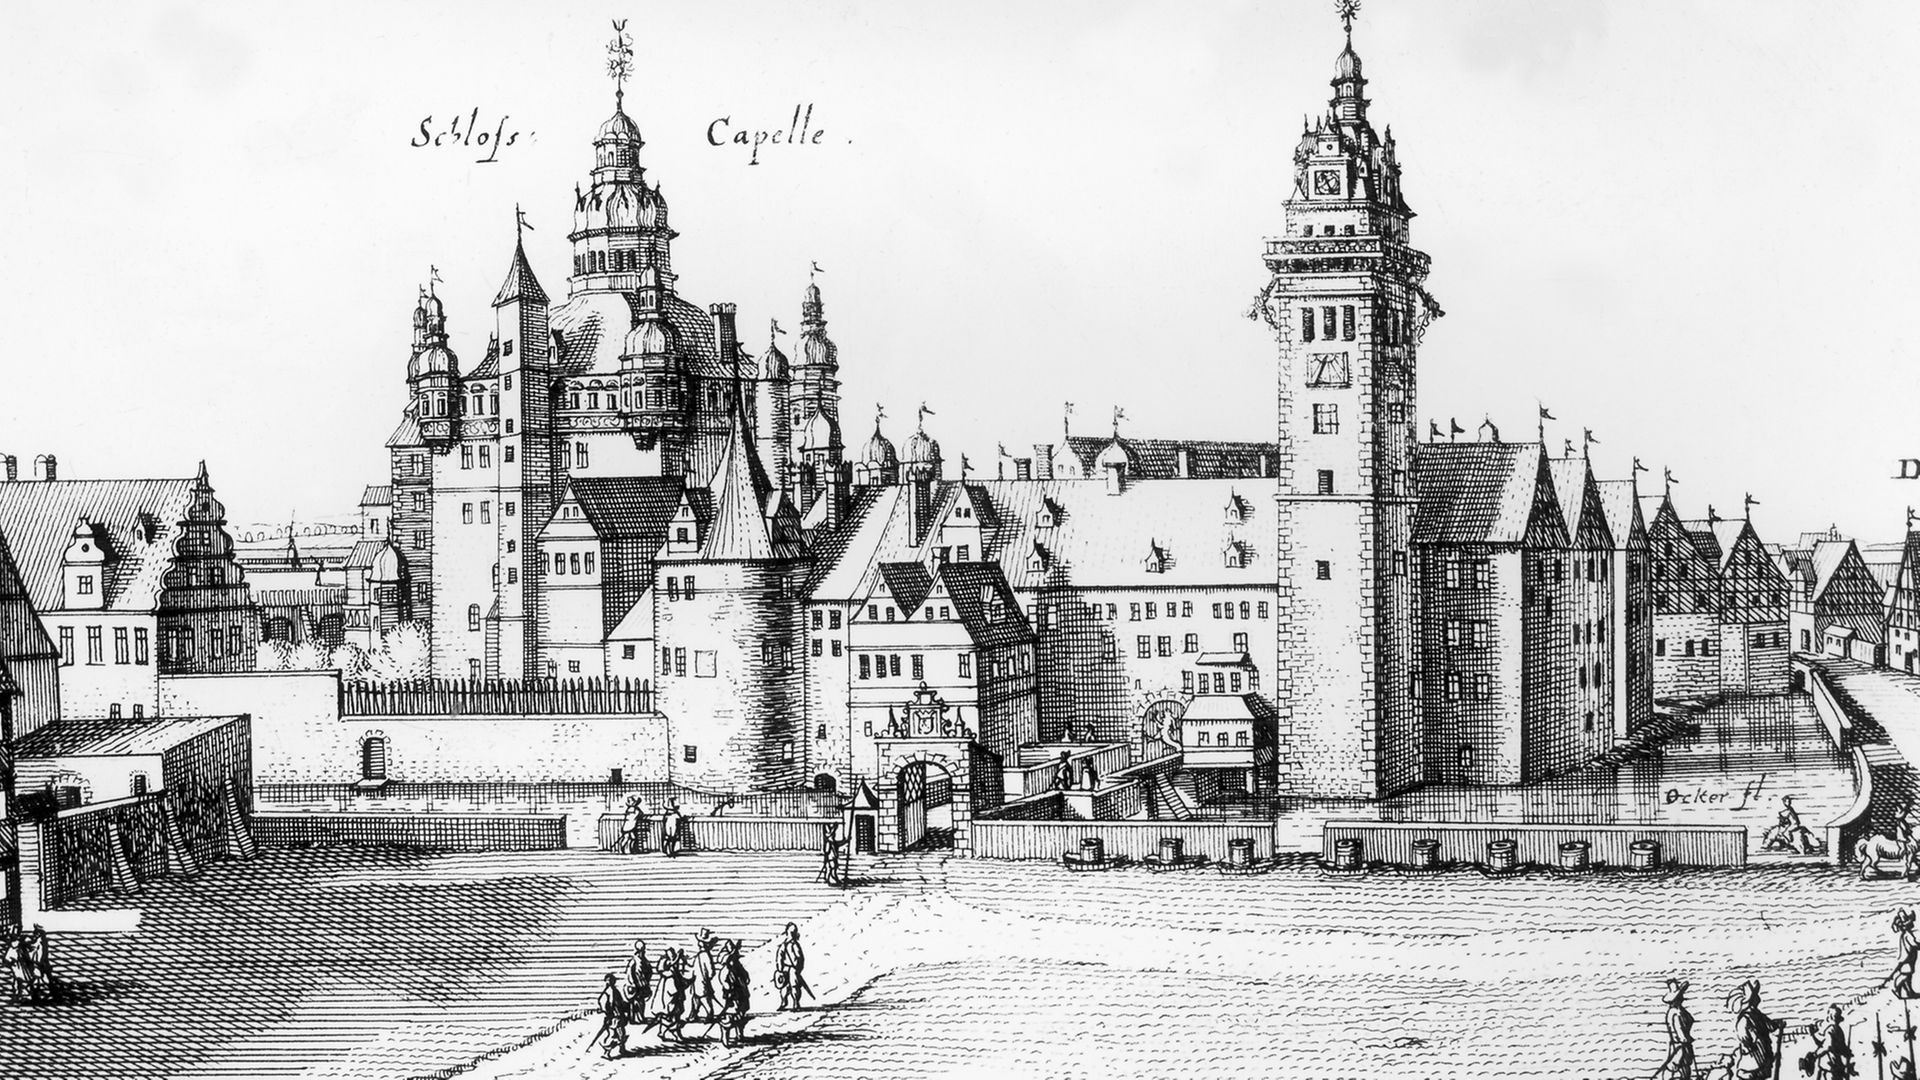 "Das Fürstl. Schloss in der Vestung Wolffenbüttel" Kupferstich, Caspar Merian nach Conrad Buno, 1654, Museum Wolfenbüttel